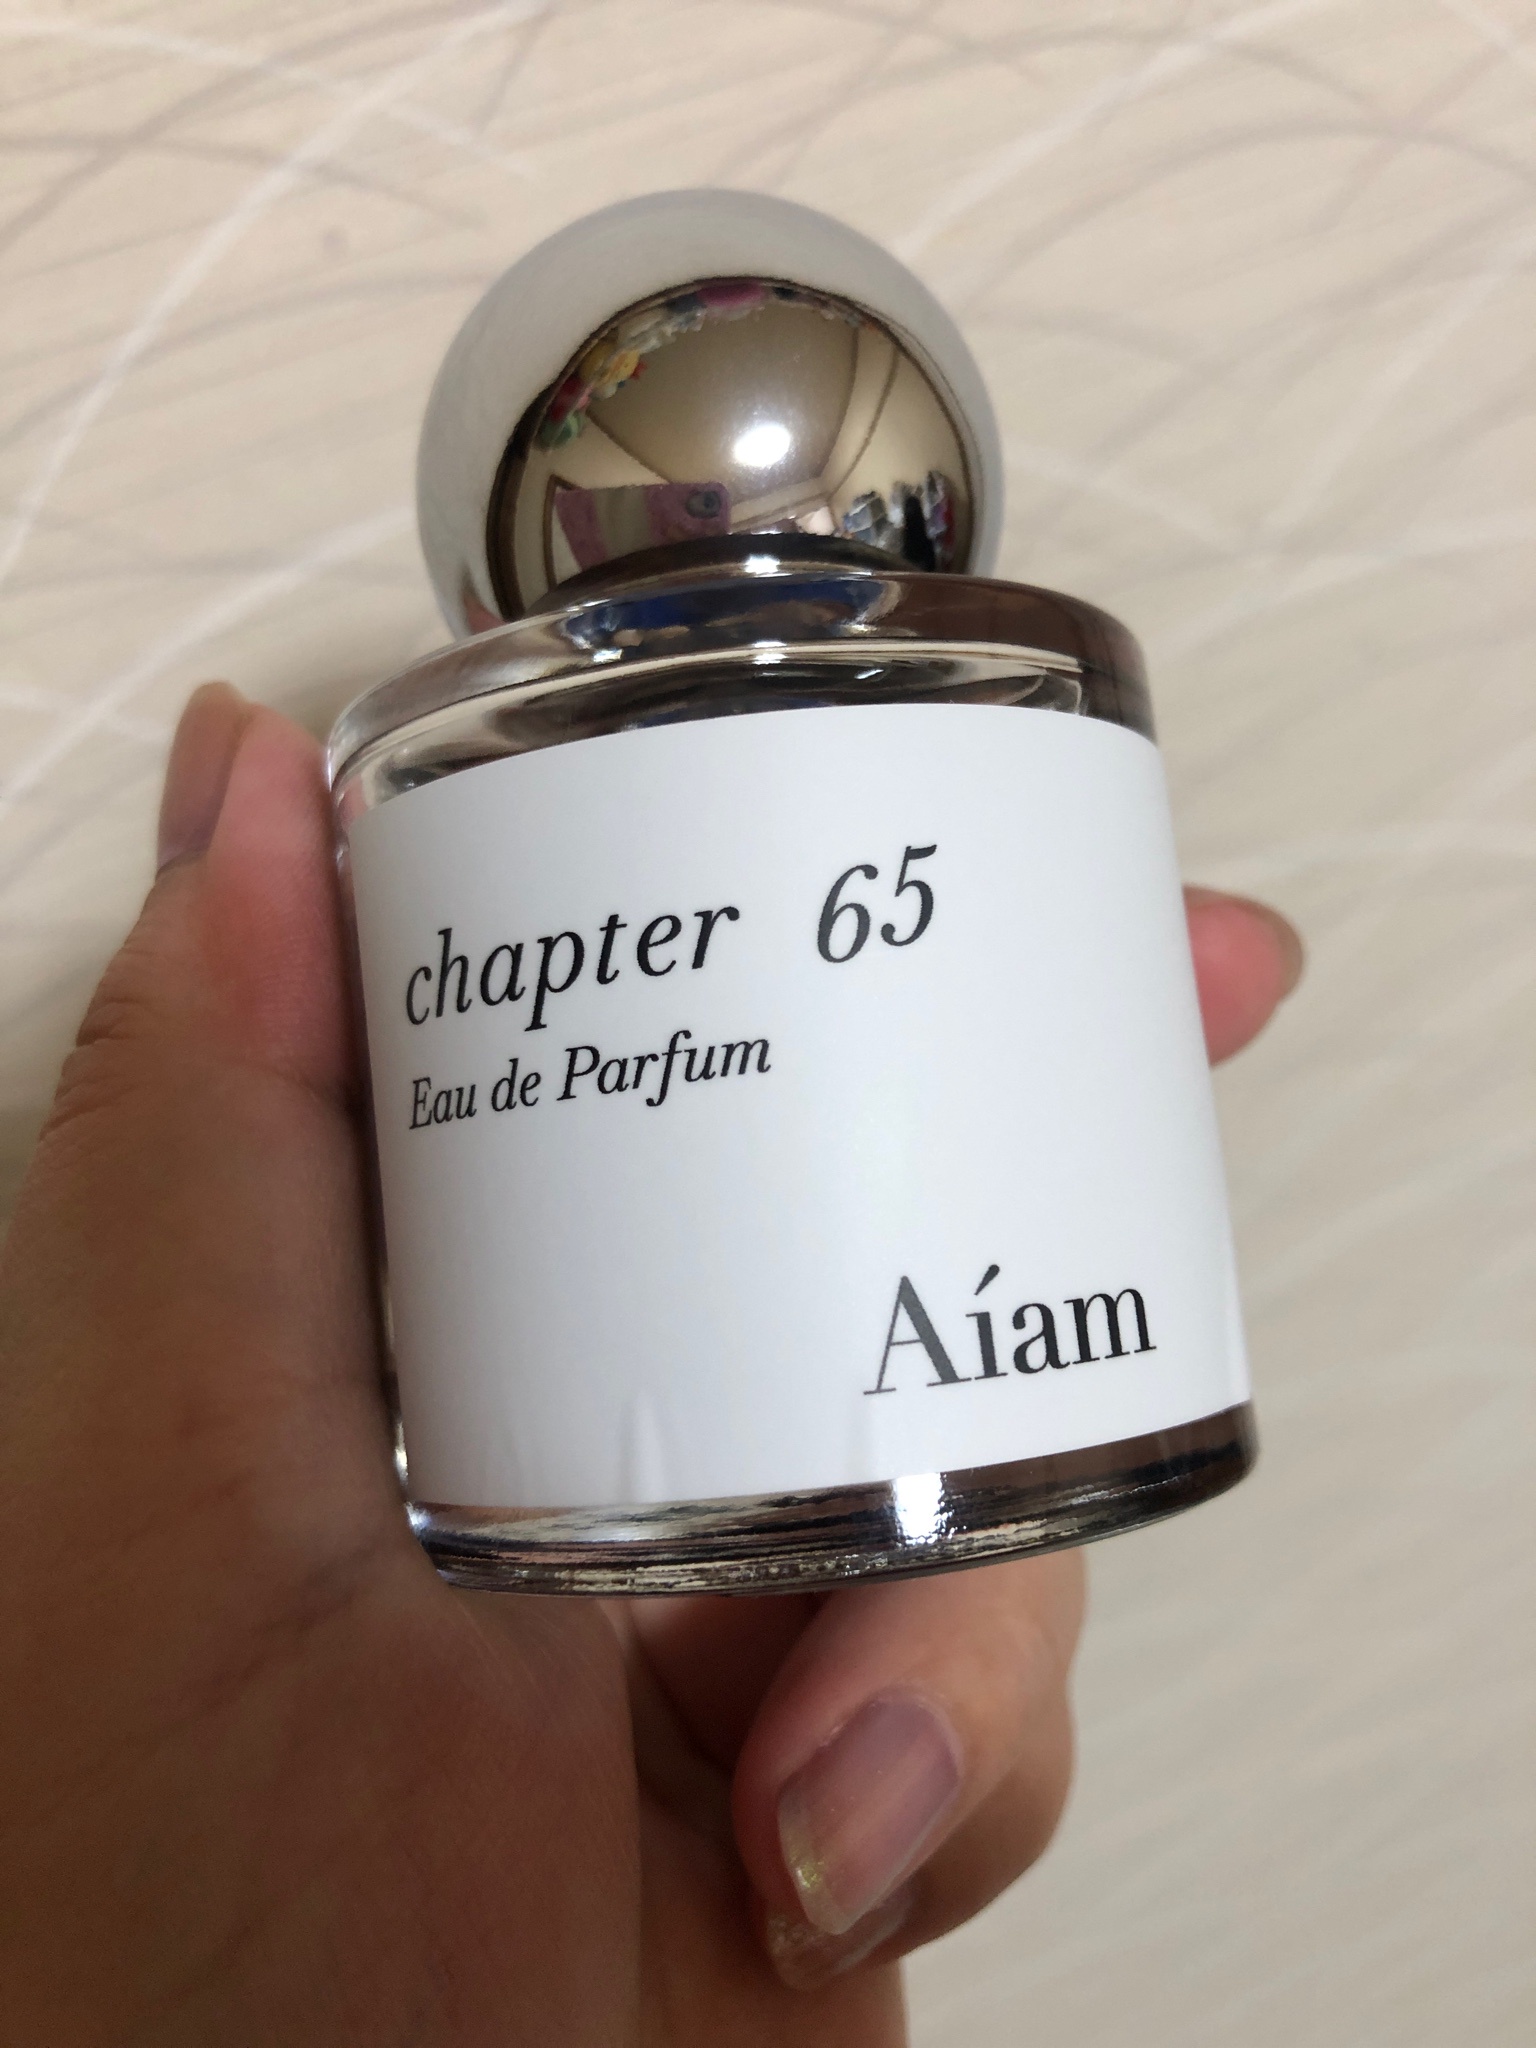 Aiam chapter 65 香水 50ml - ユニセックス